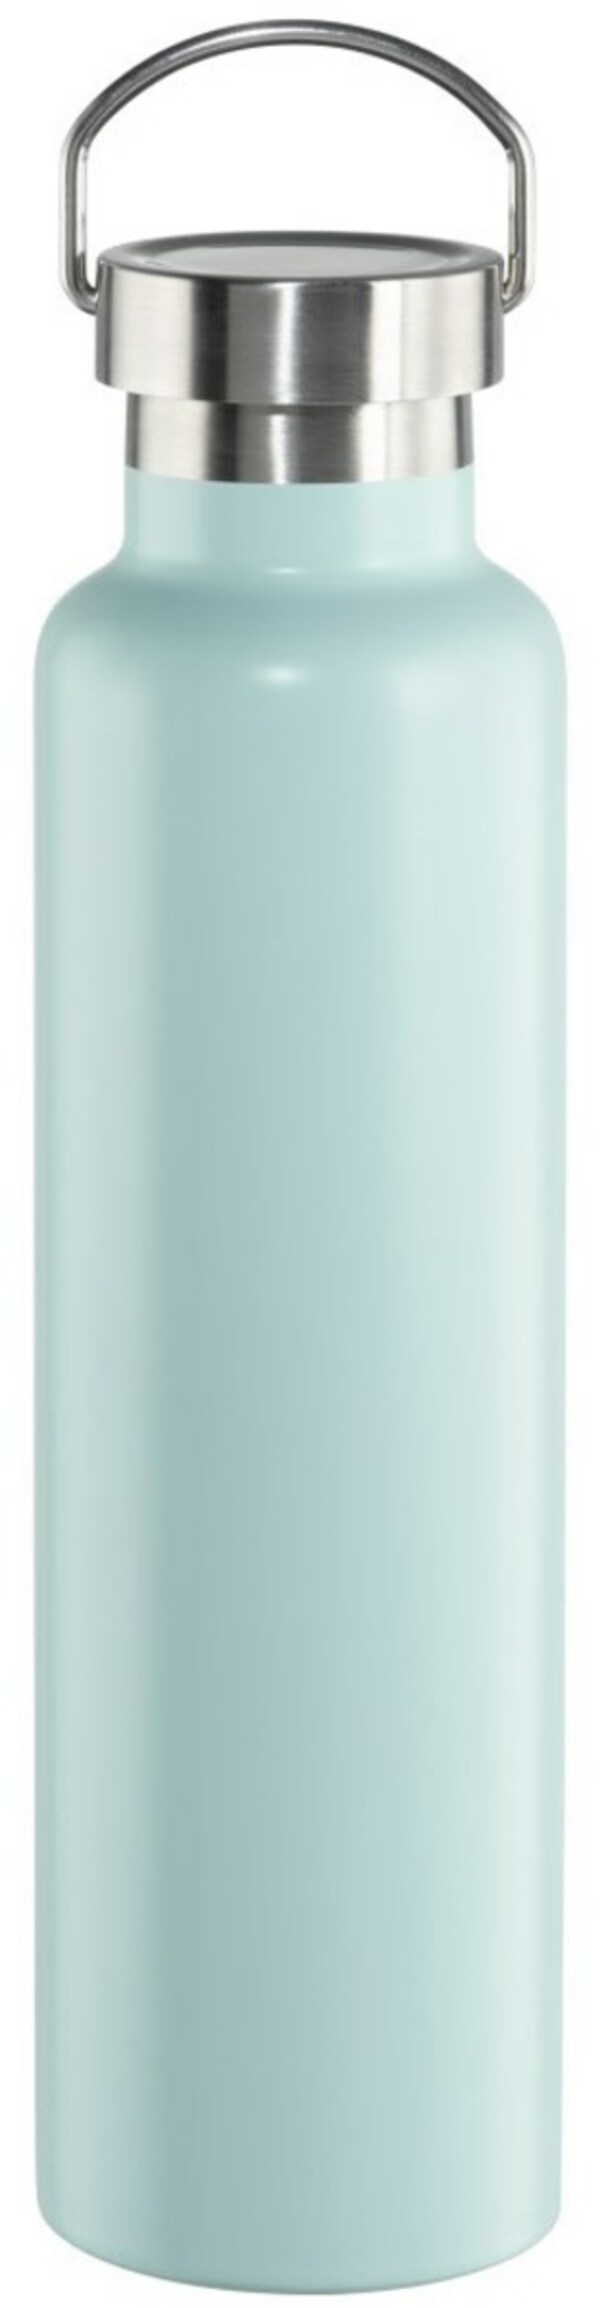 Bild 1 von Isolierflasche (750ml) Deckel mit Griff Pastellblau